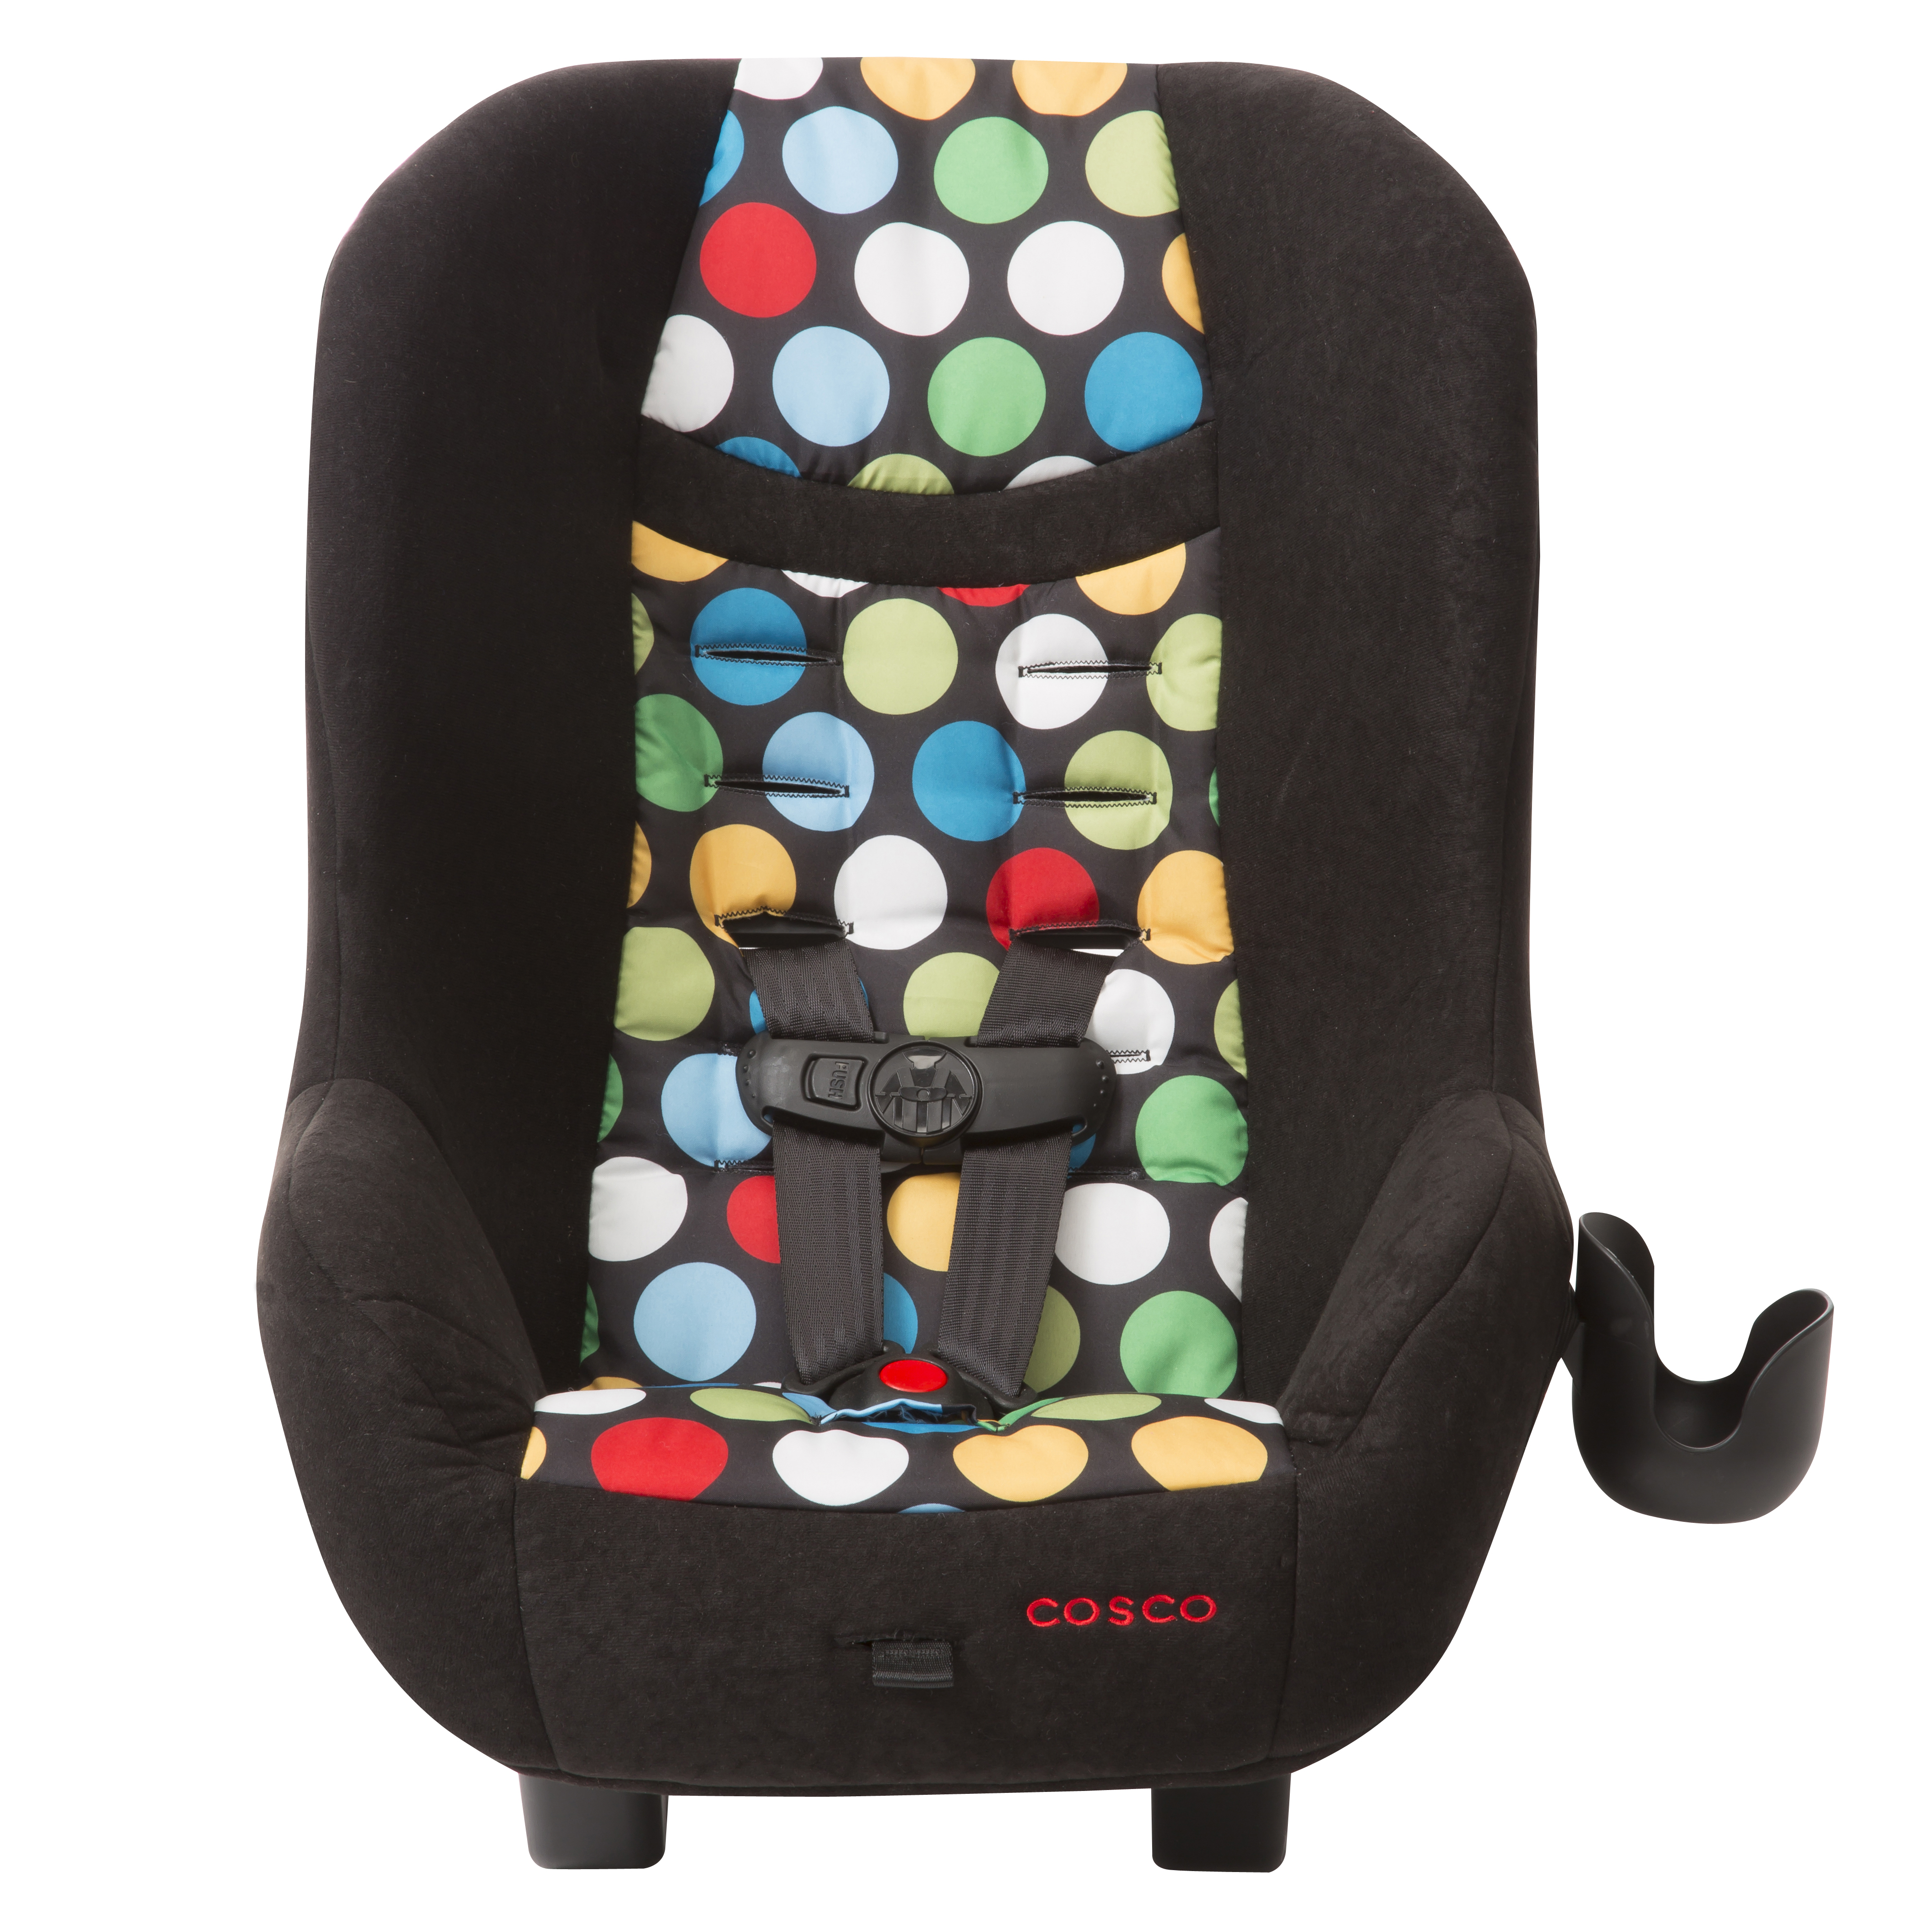 Cosco Scenera NEXT convertible child car seat for $35